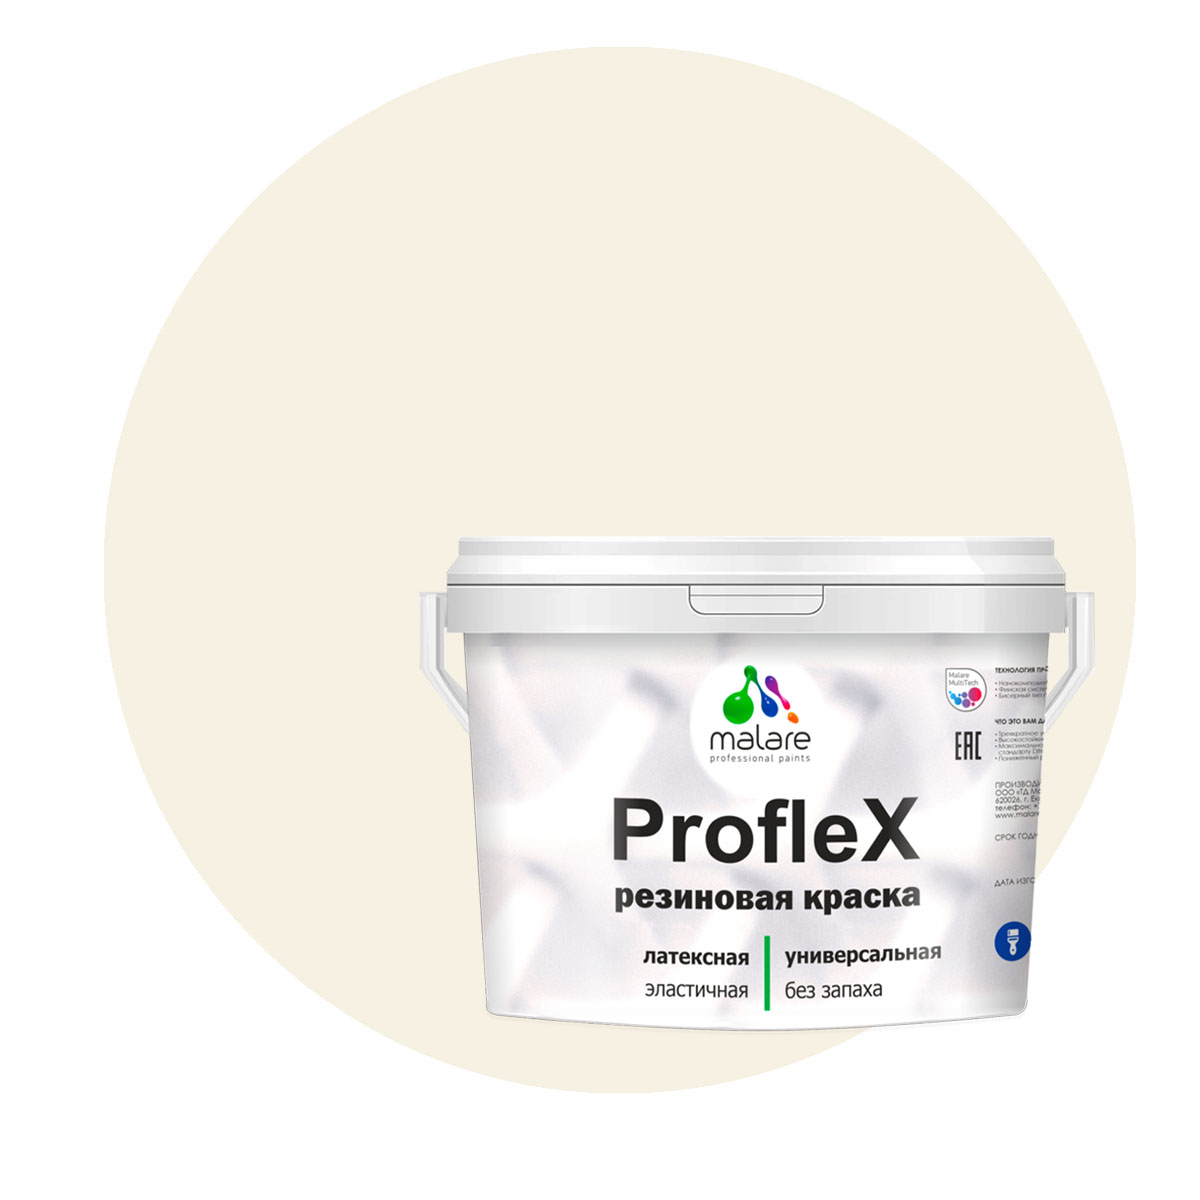 Краска Malare ProfleX для фасадов, интерьера, мебели, парное молоко, 2 кг. щелочной очиститель фасадов зданий plex